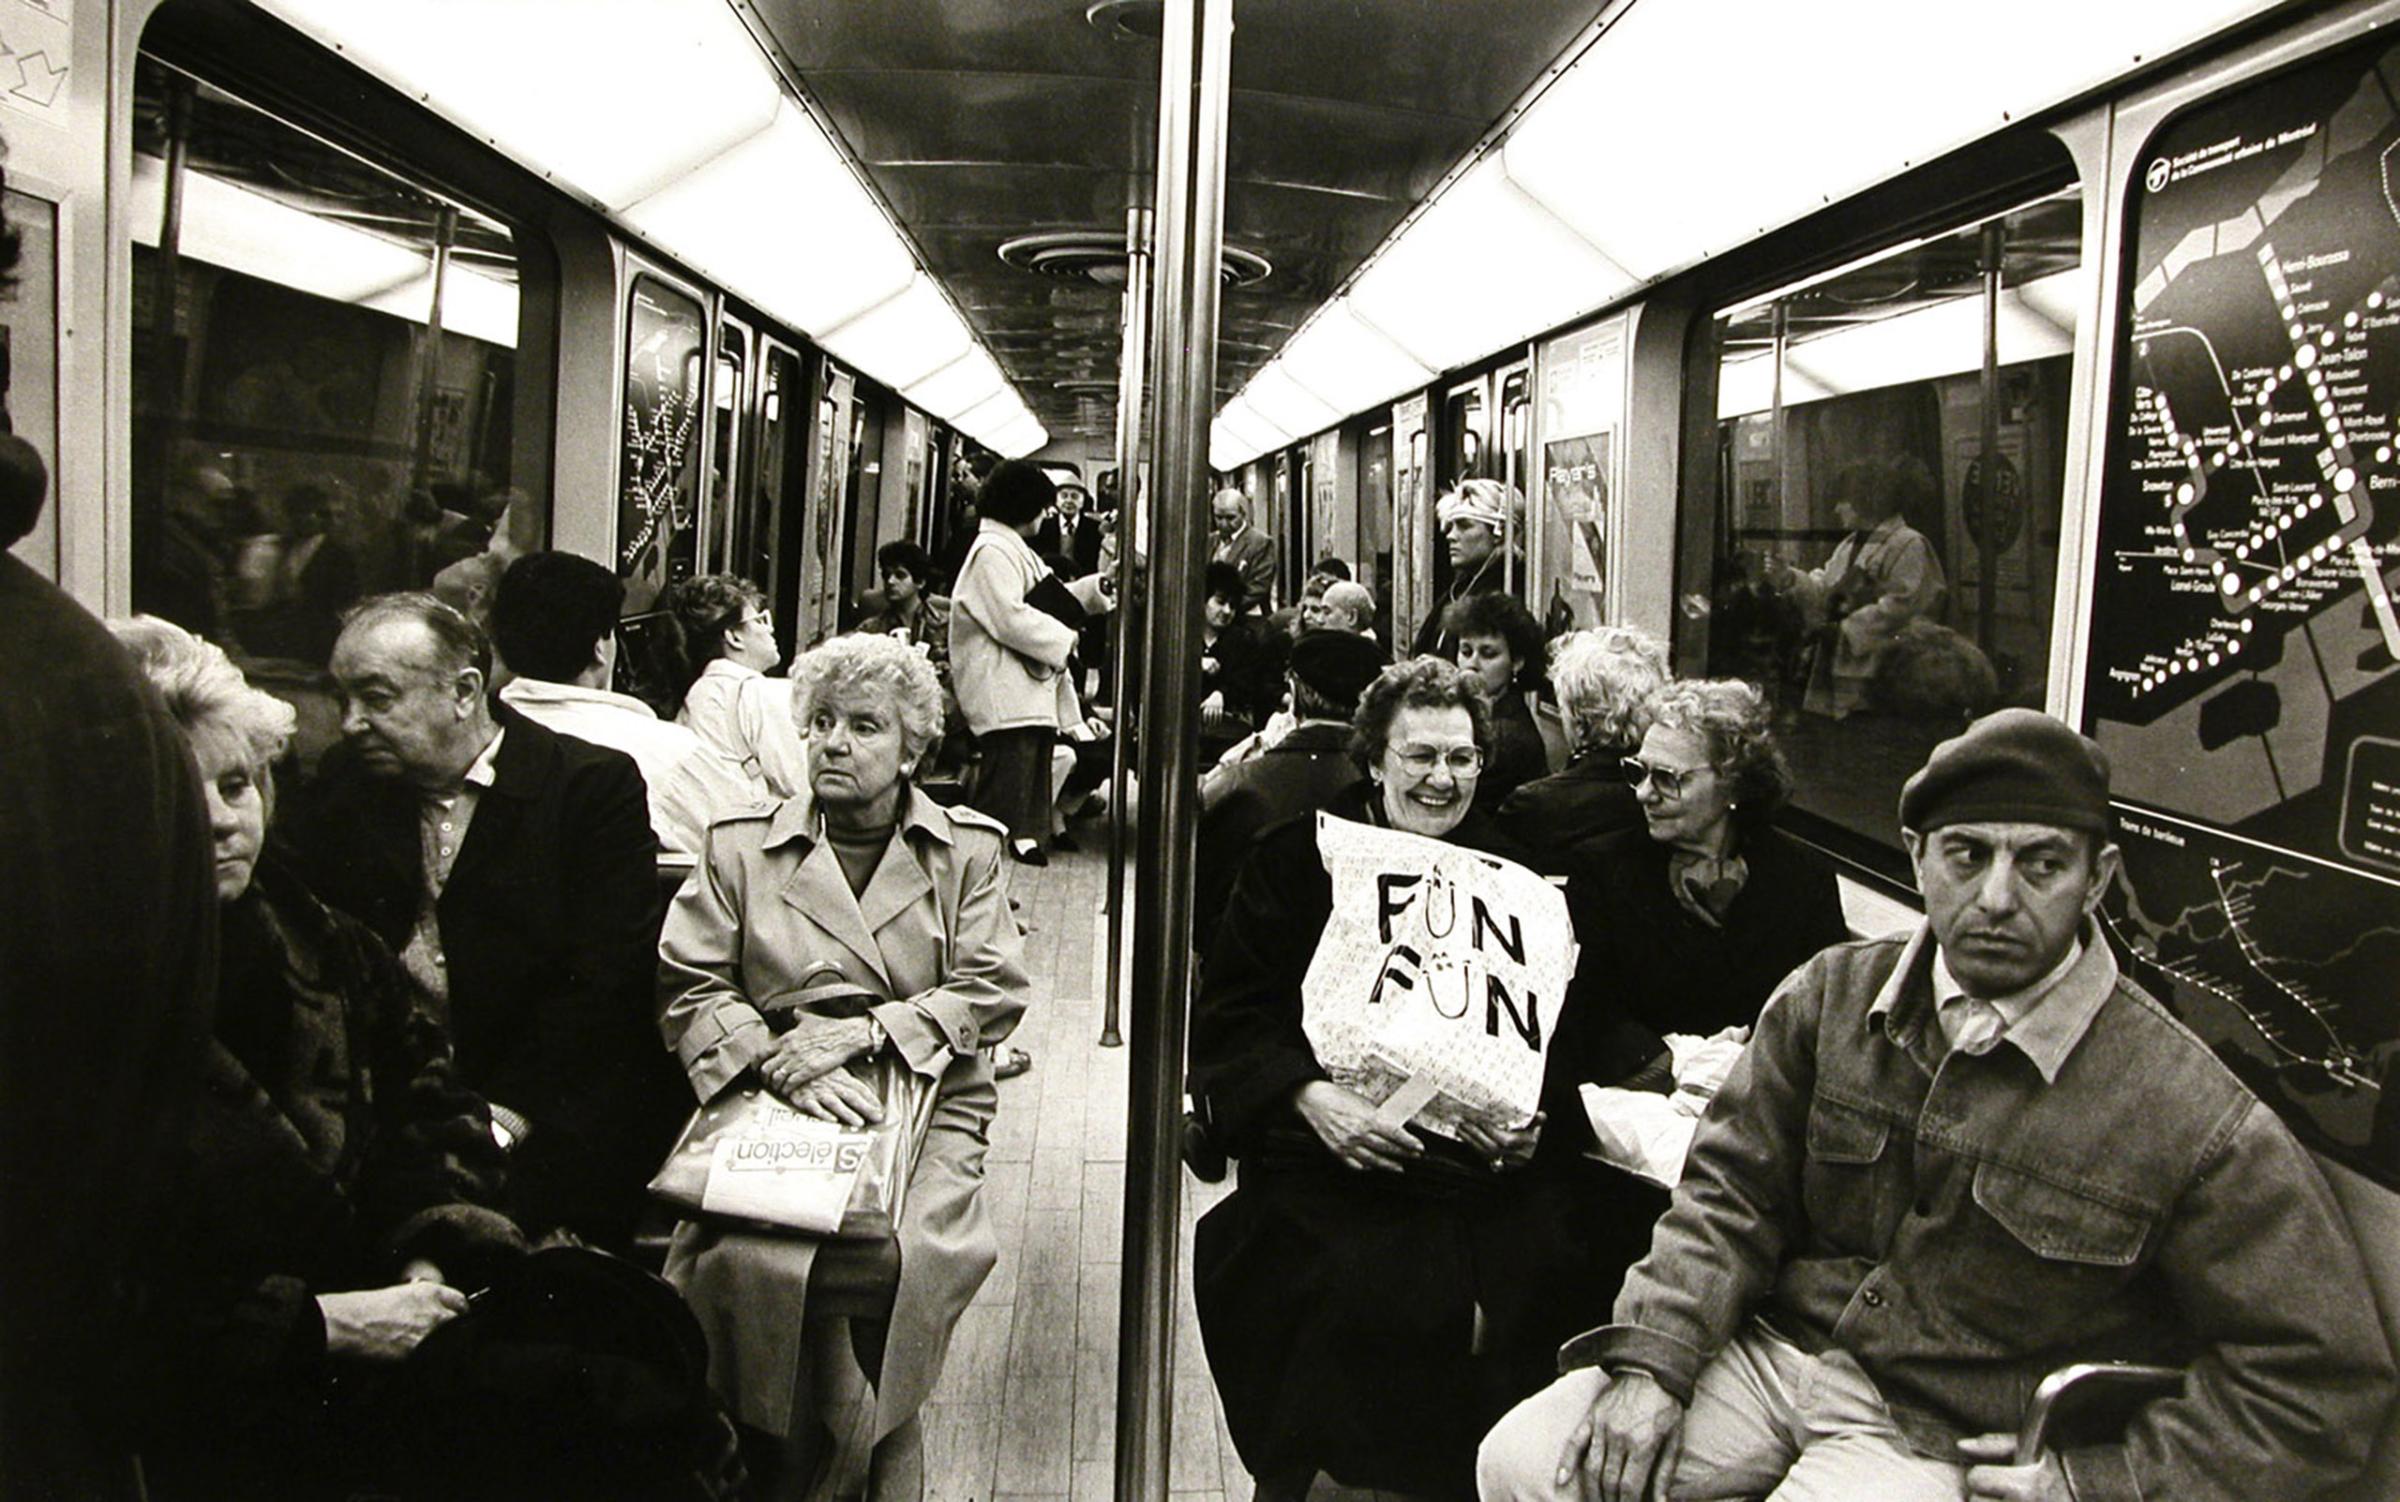 Fun, Fun, Montreal Metro, 1987